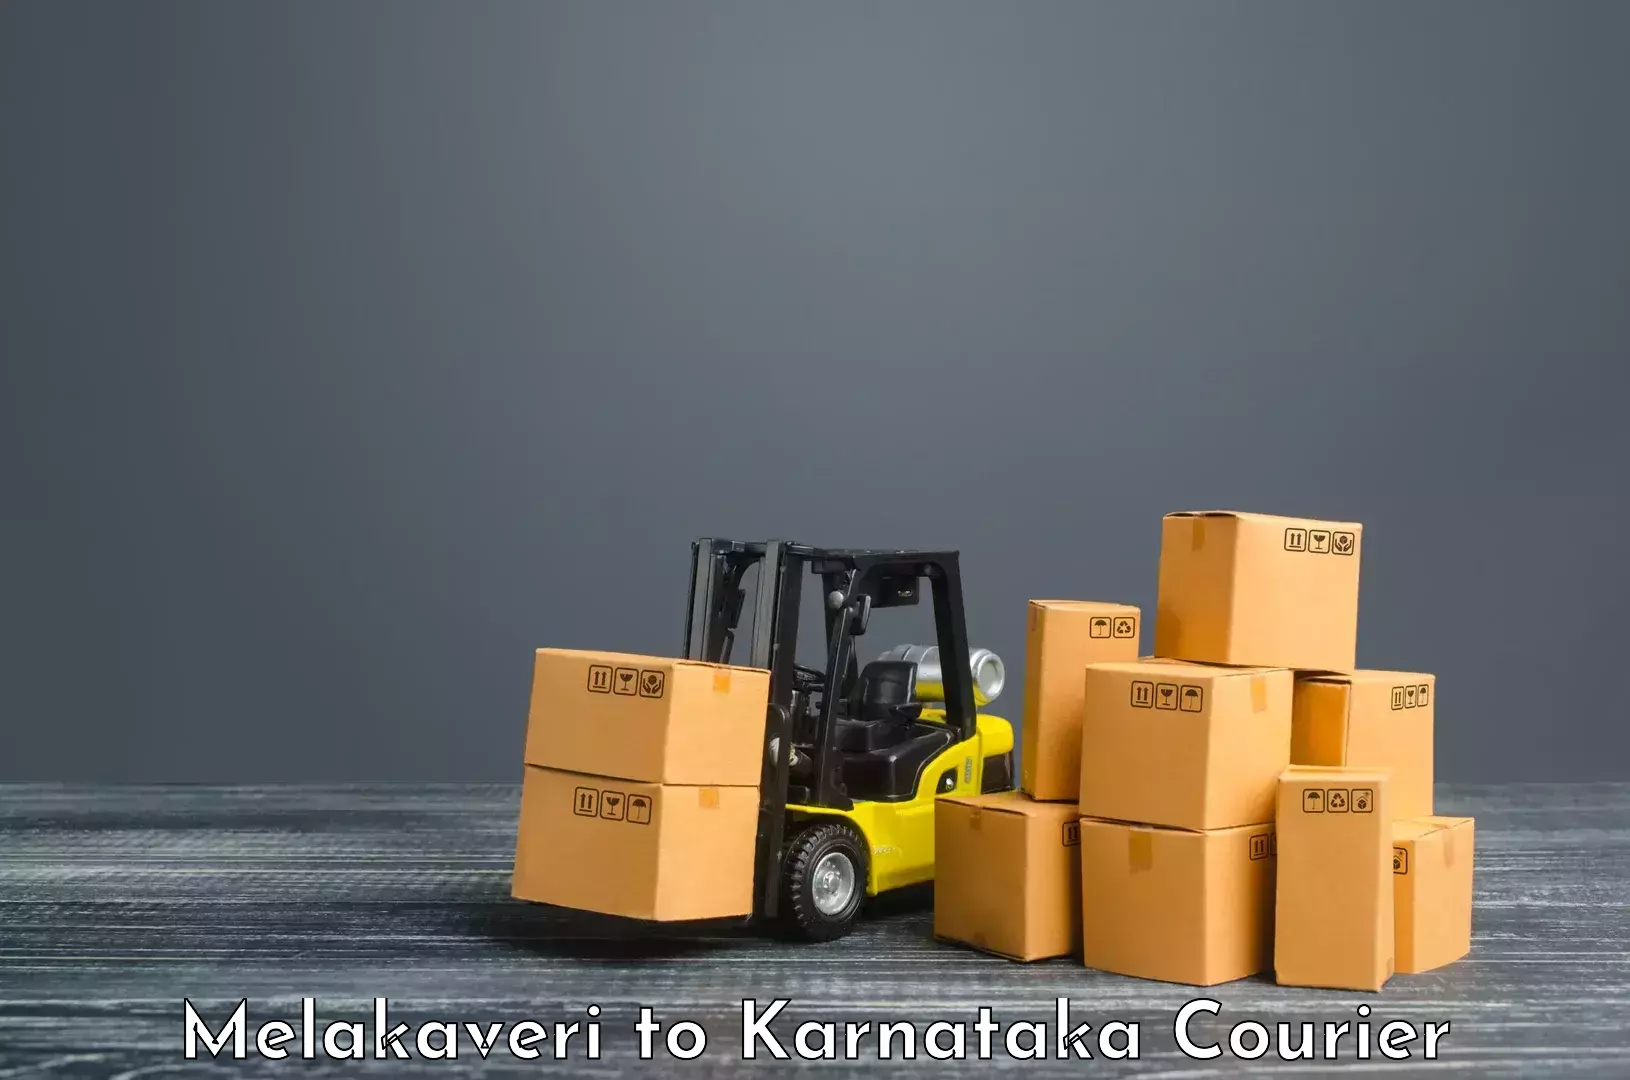 Secure packaging in Melakaveri to Gurmatkal